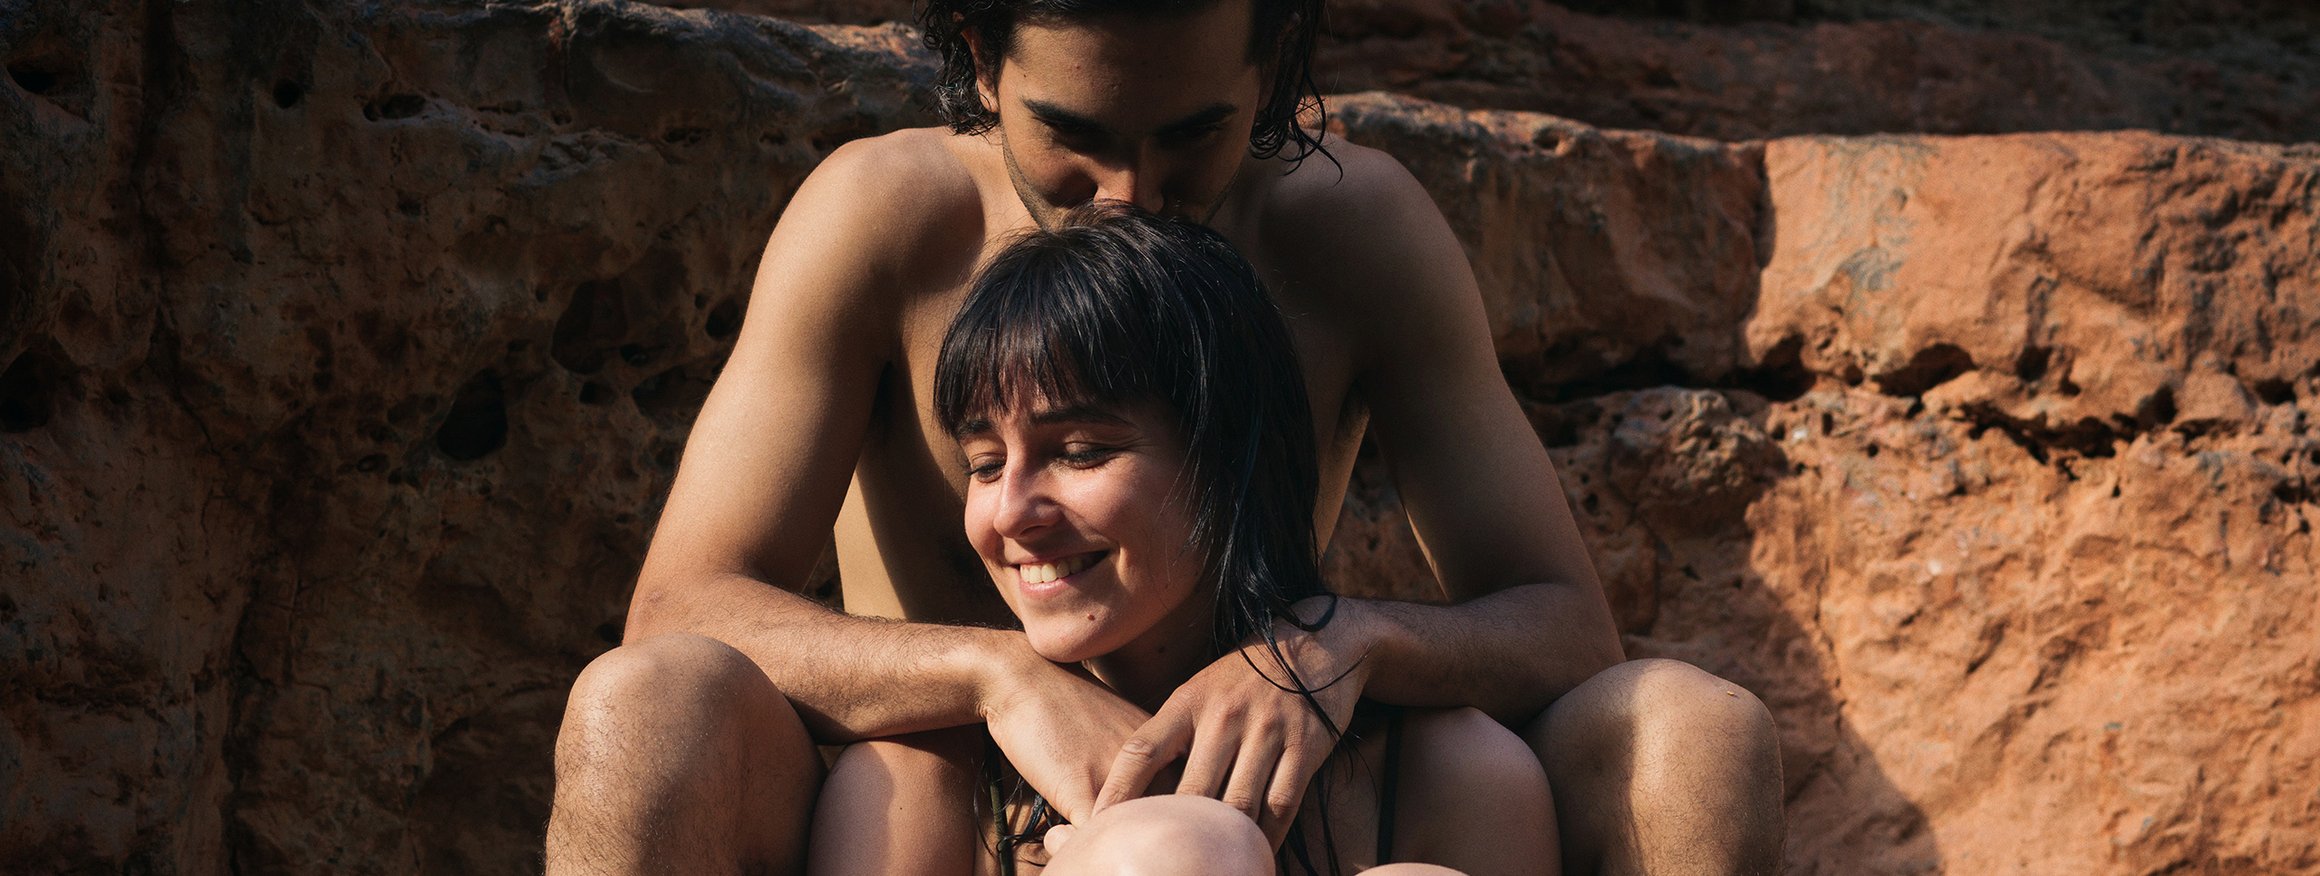 Ein junges nacktes Paar sitzt lachend vor einer Felswand, während er die Arme um ihre Schultern gelegt hat